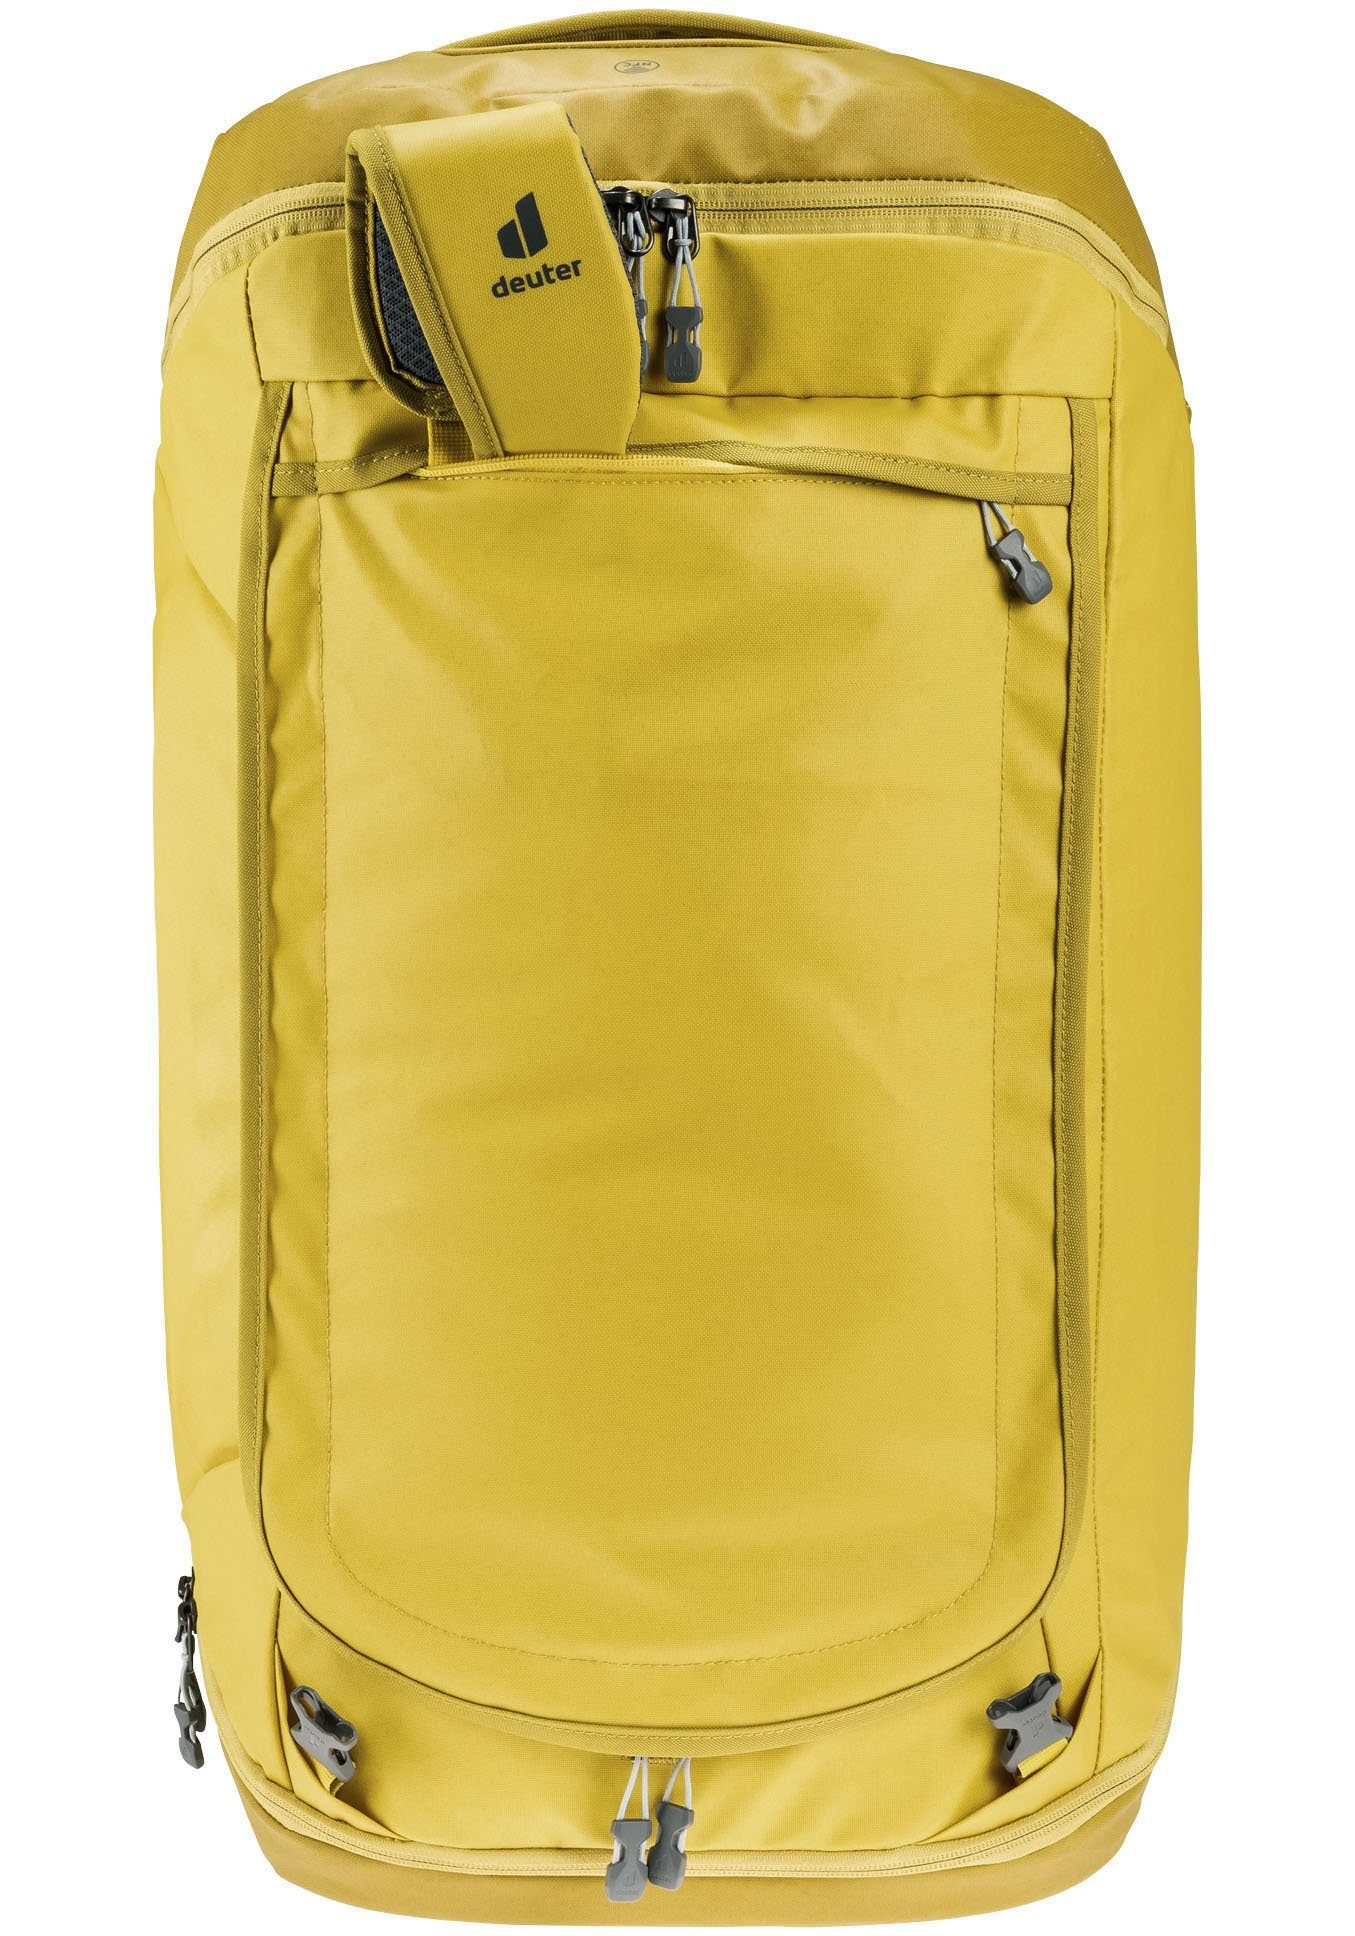 Kompression AViANT Duffel Reisetasche gelb innen Pro 60, Kleidung deuter für